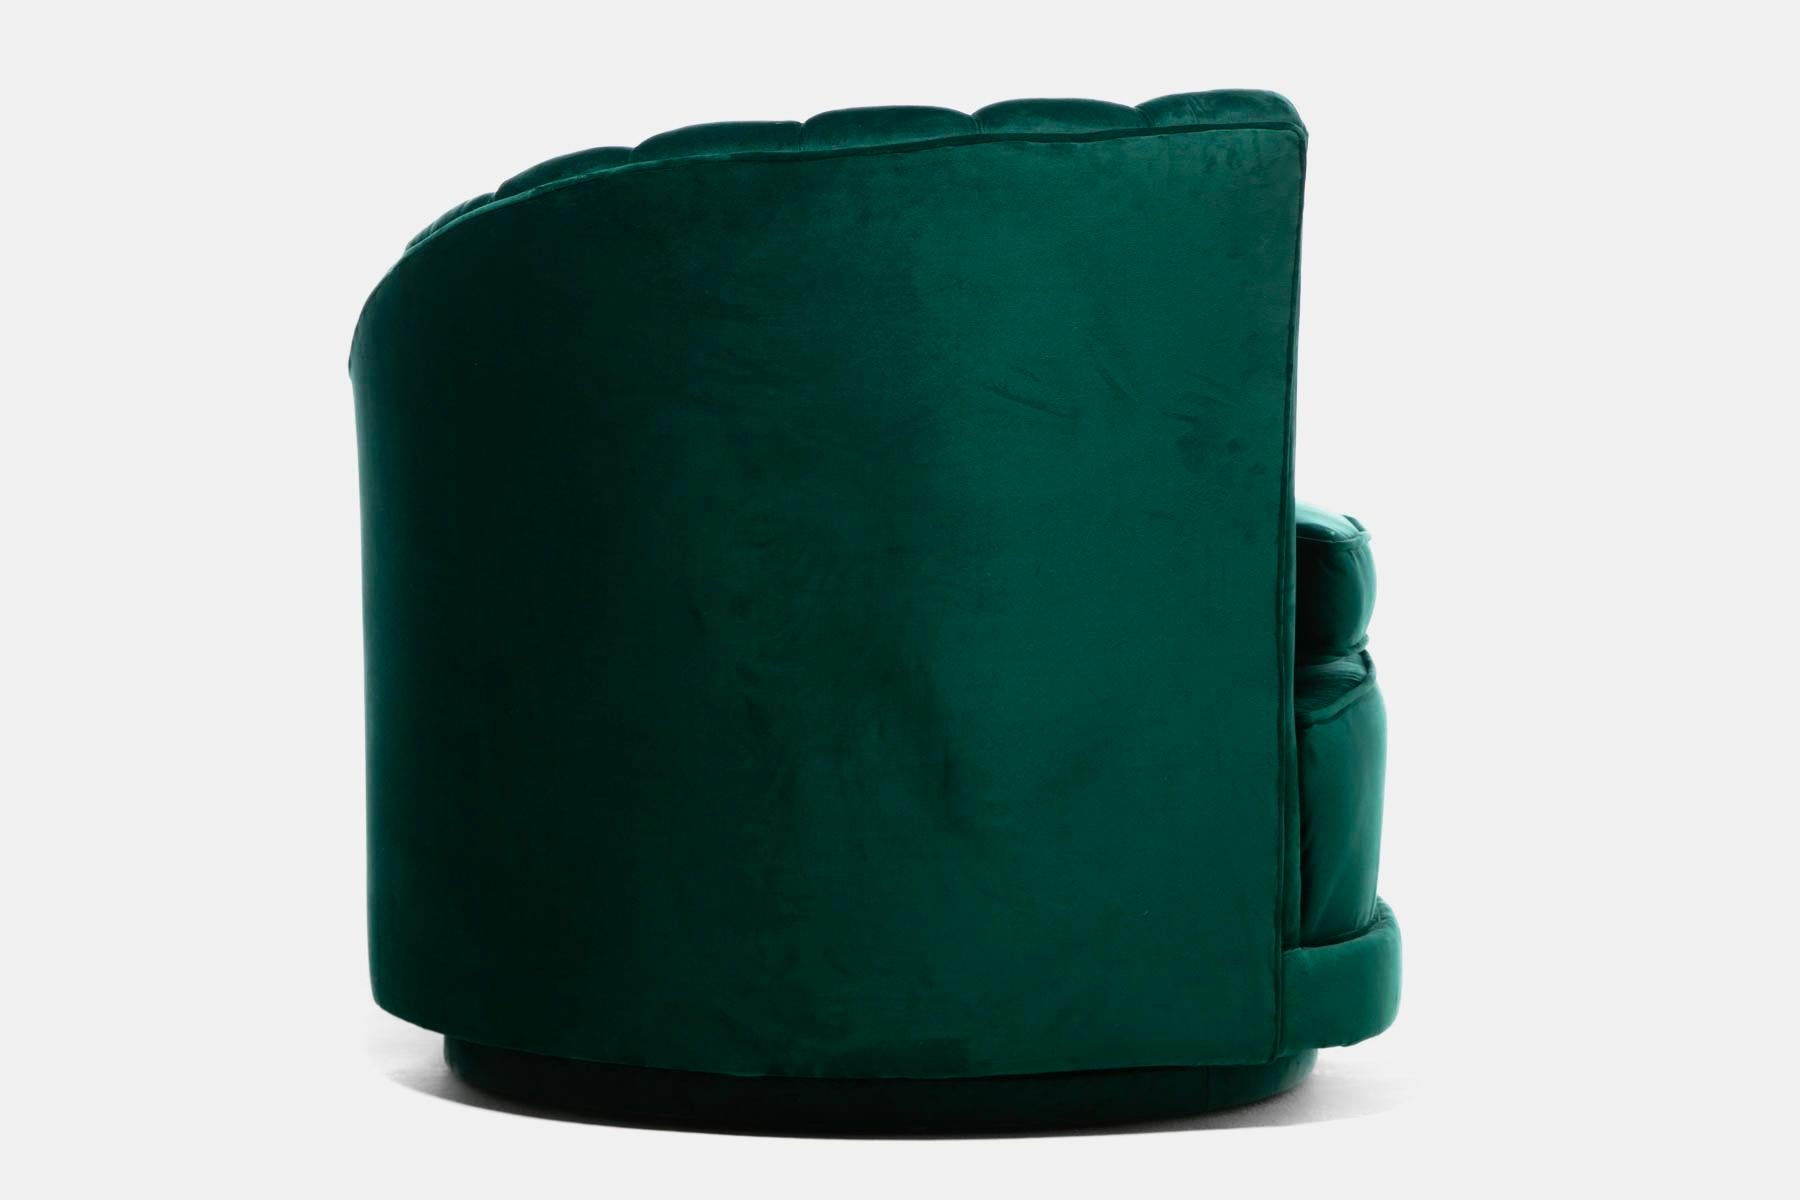 Hollywood Regency Glamorous Asymmetrical Swivel Chairs in Emerald Green Velvet For Sale 6